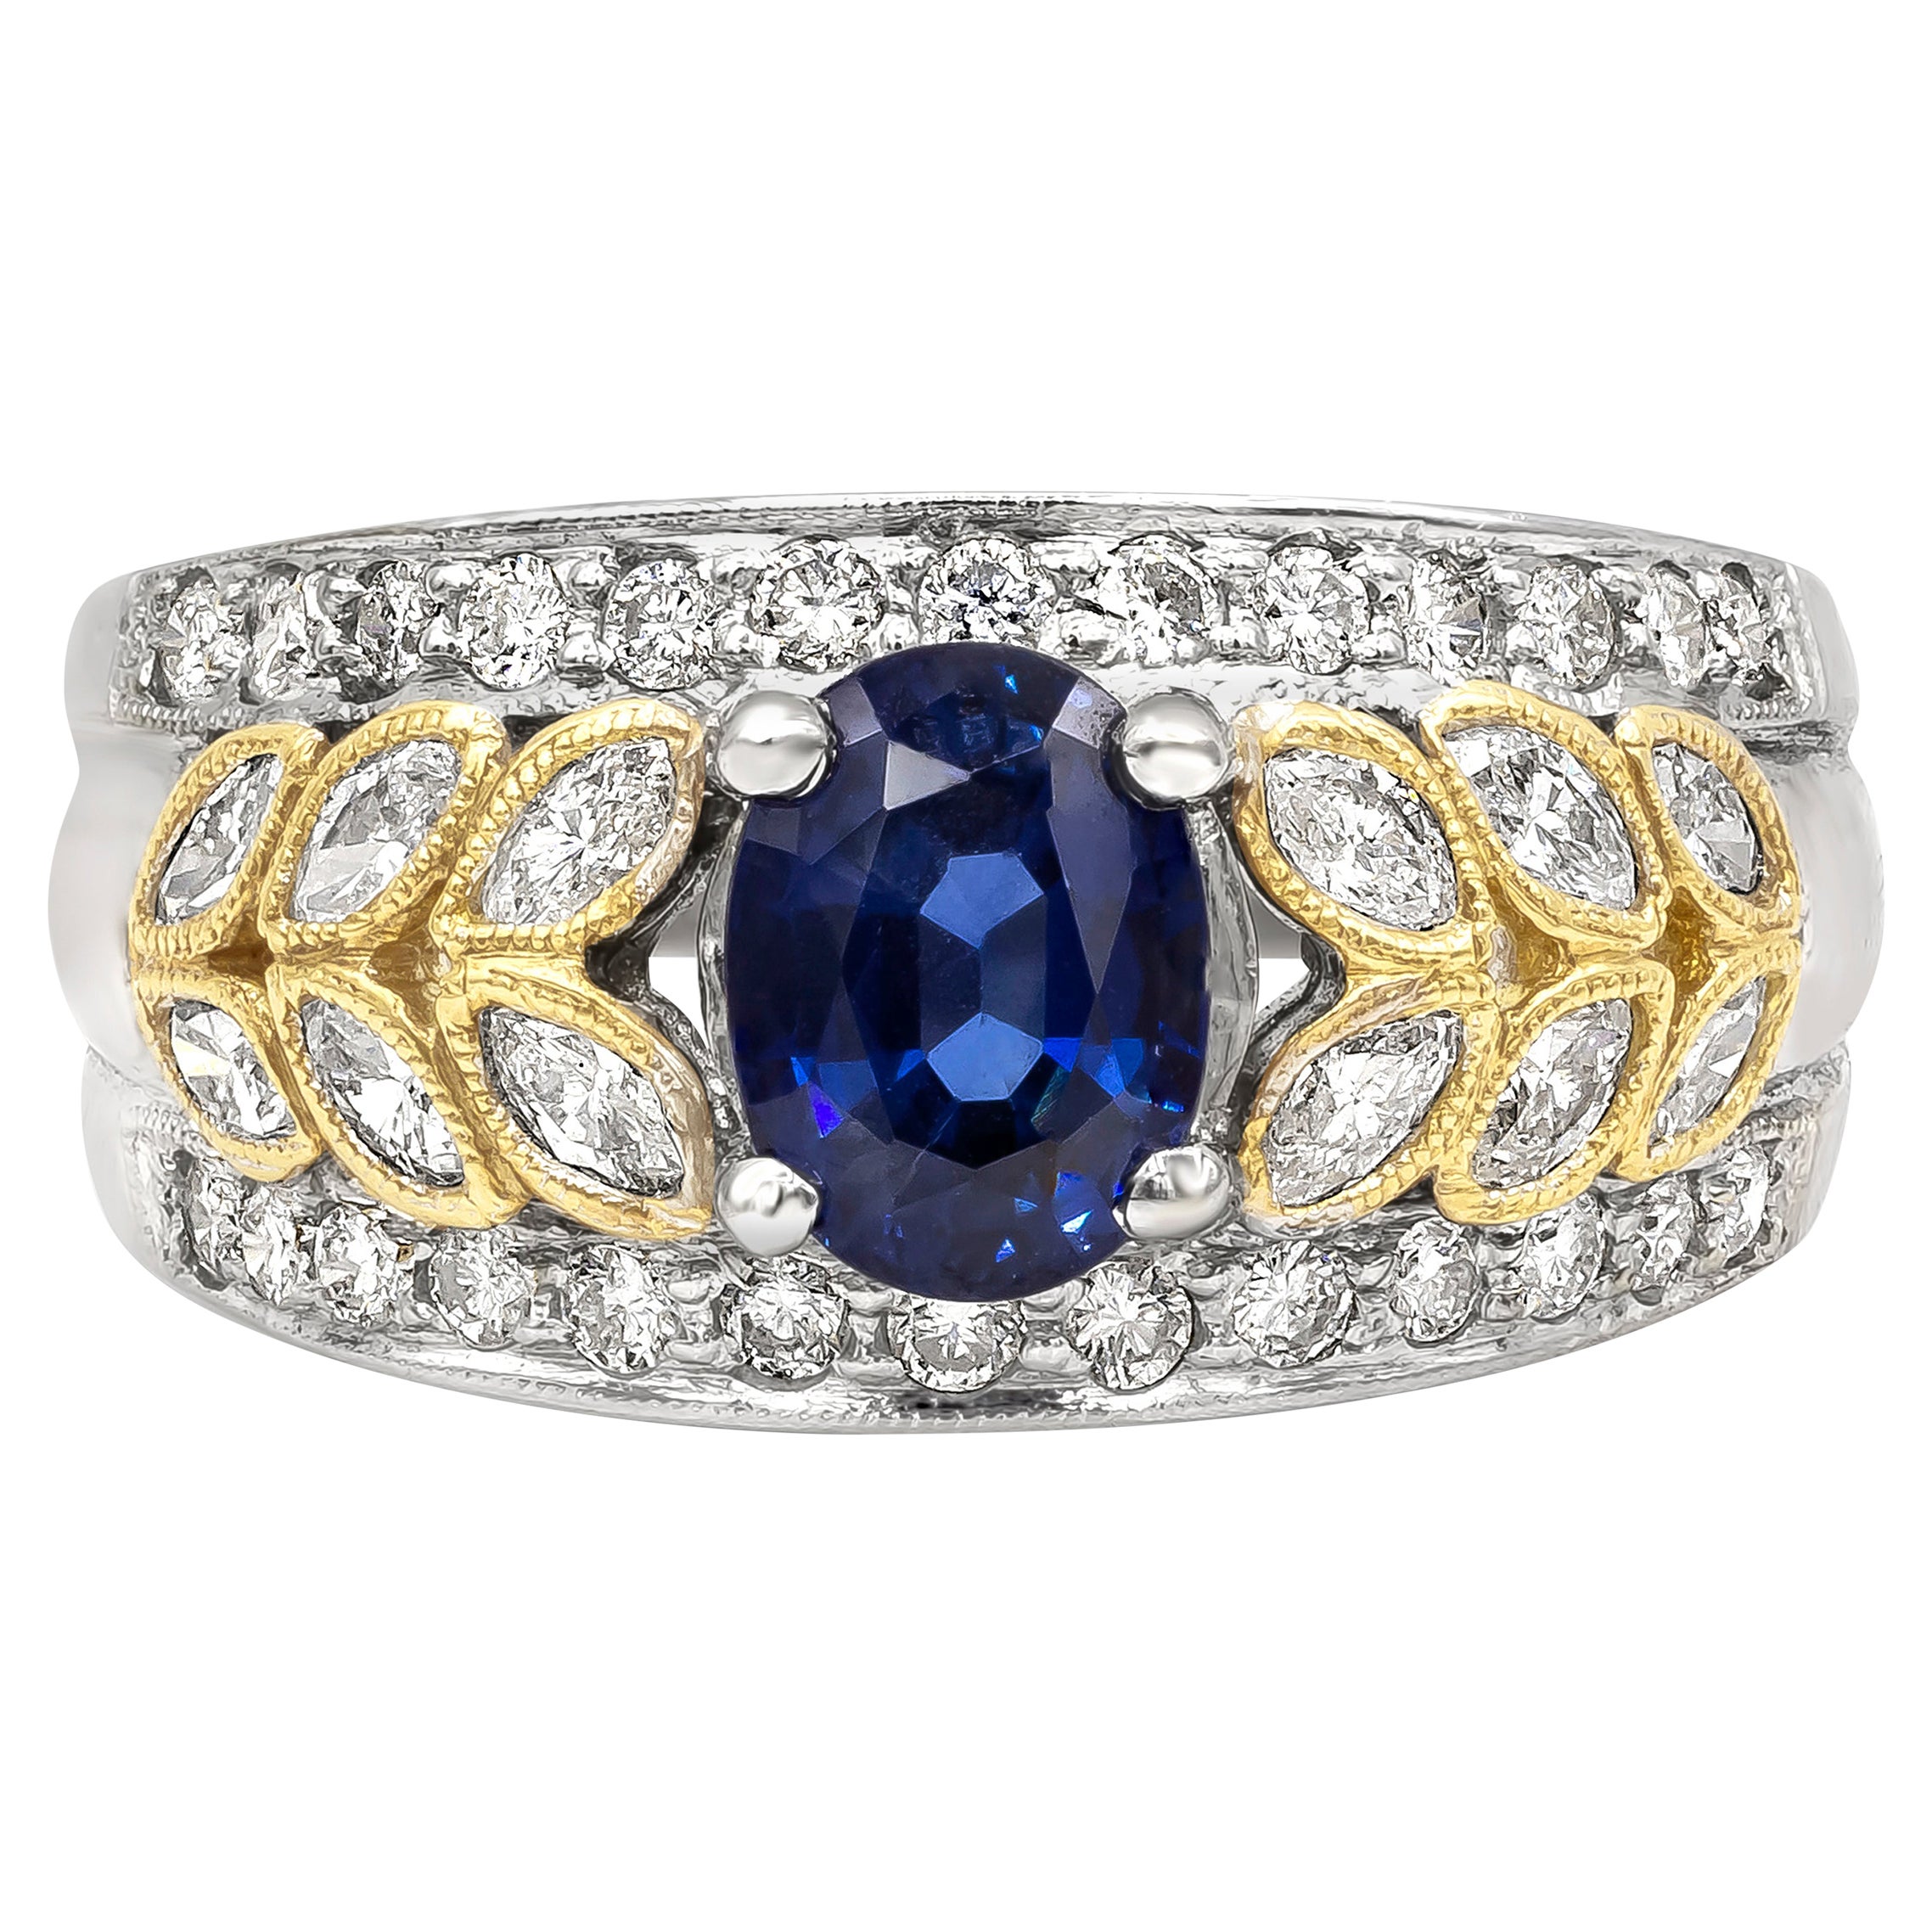 Roman Malakov 1.44 Carats Oval Blue Sapphire and Mixed Cut Diamonds Fashion Ring